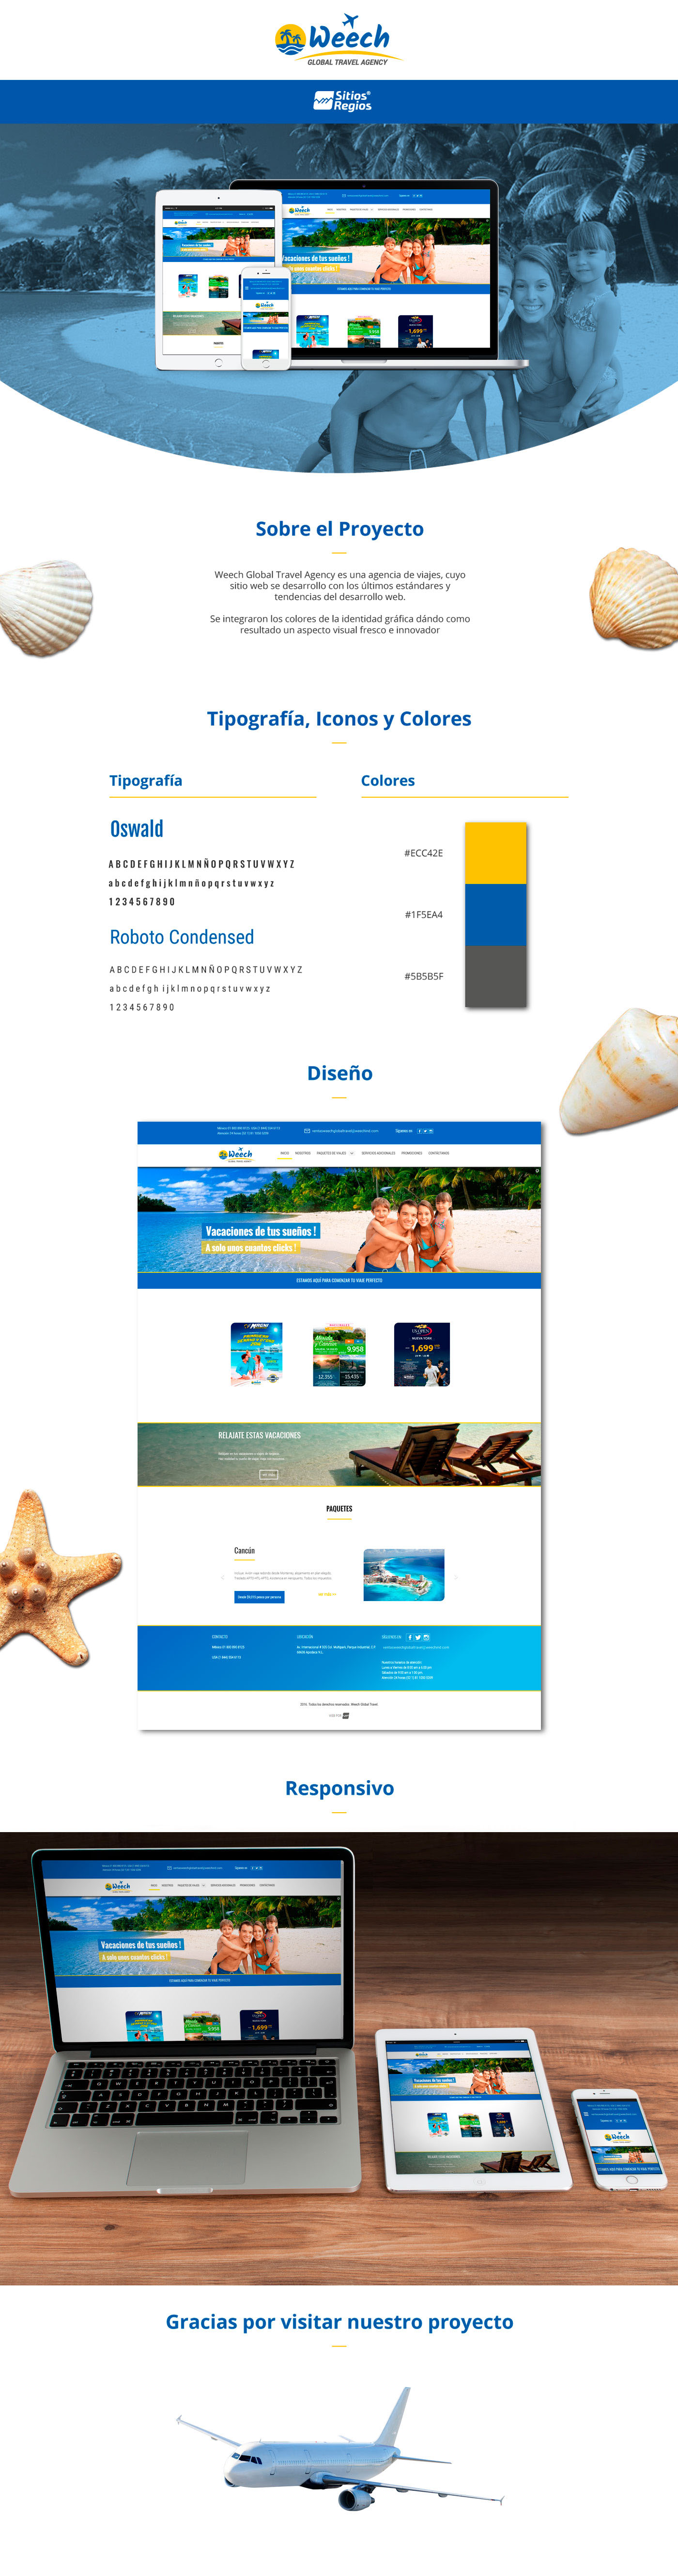 Diseño web desarrollo web viajes agencia de viajes